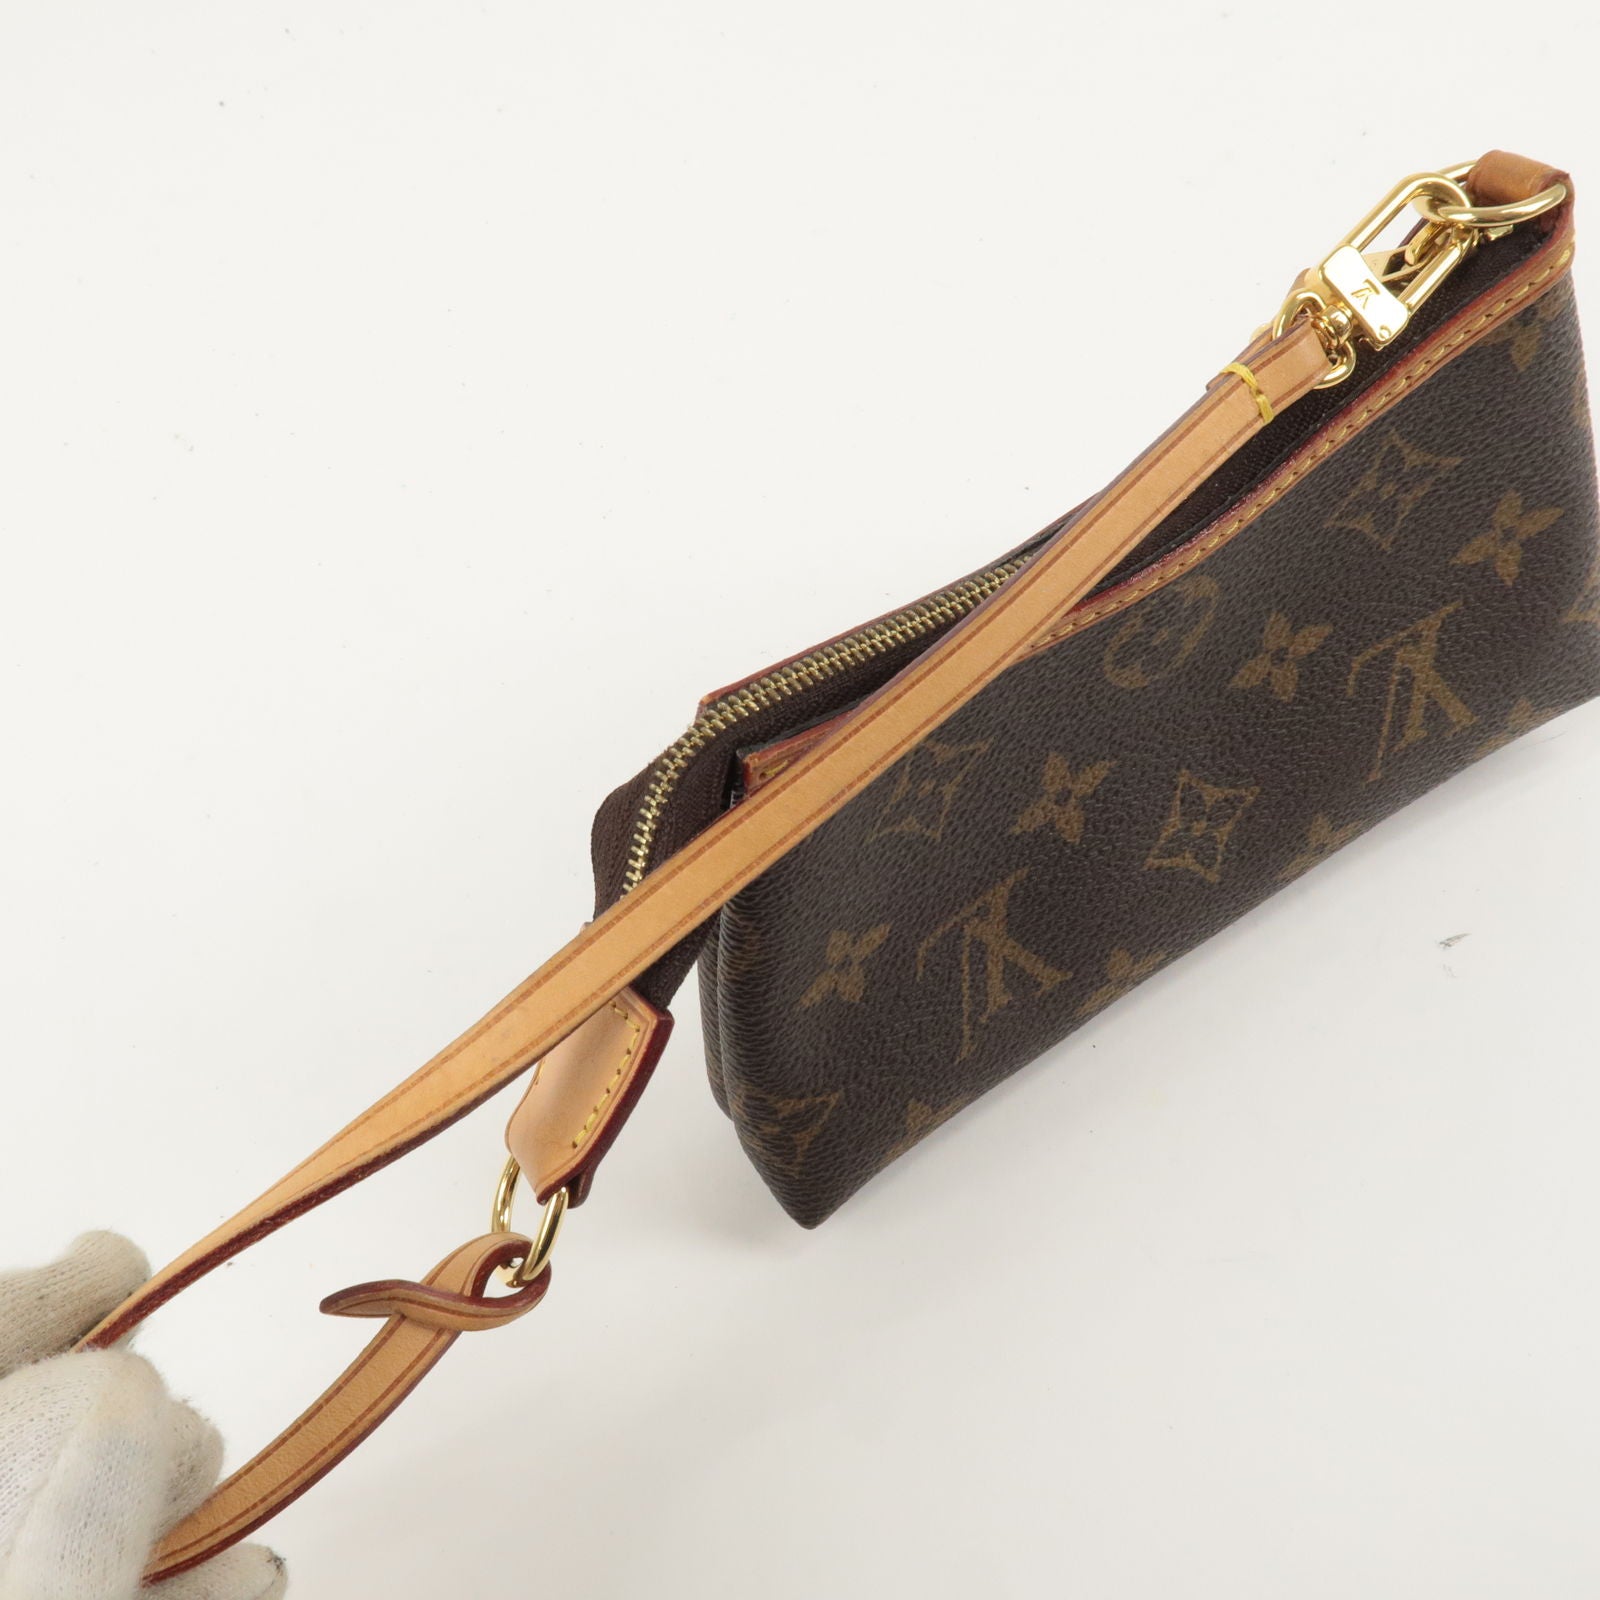 Louis Vuitton Monogram Mini Pochette Delightful - Brown Mini Bags